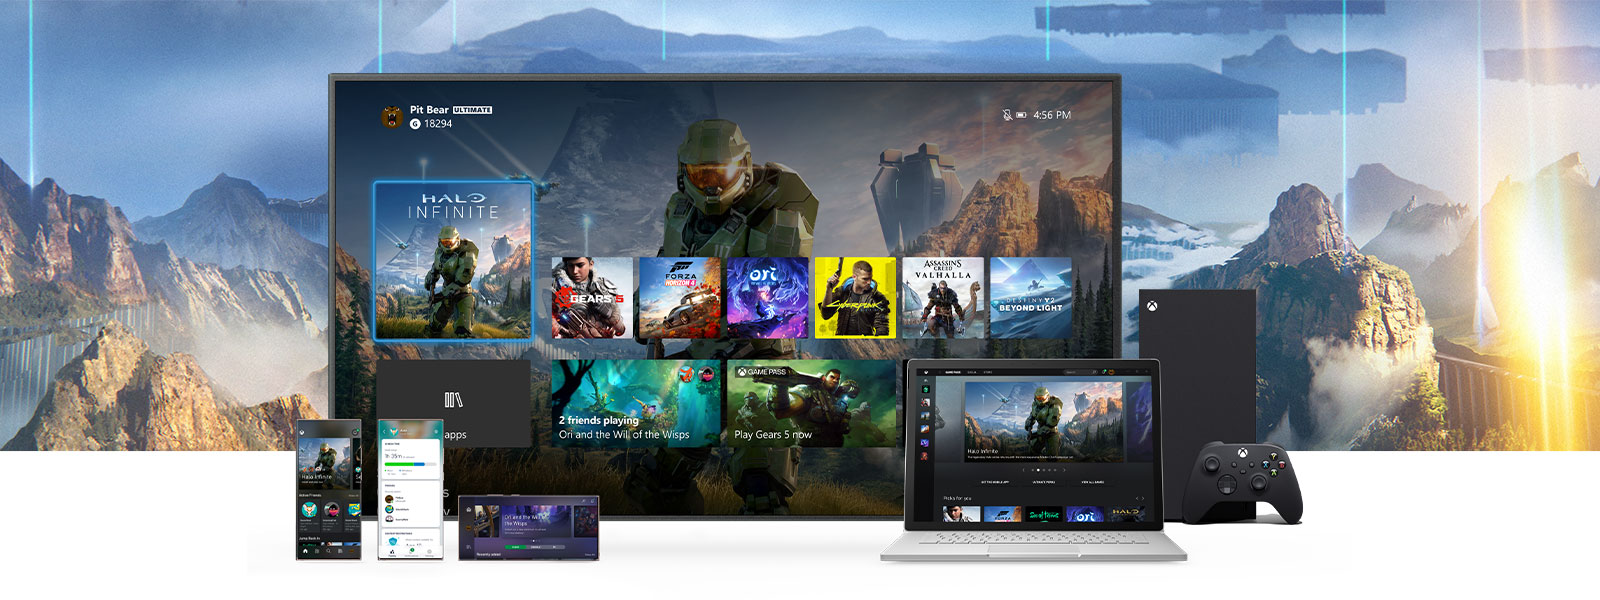 Xbox Dashboard visas på en tv bredvid en Xbox Series X-konsol. Andra enheter står framför tv:n, bland annat en dator och flera mobila enheter.